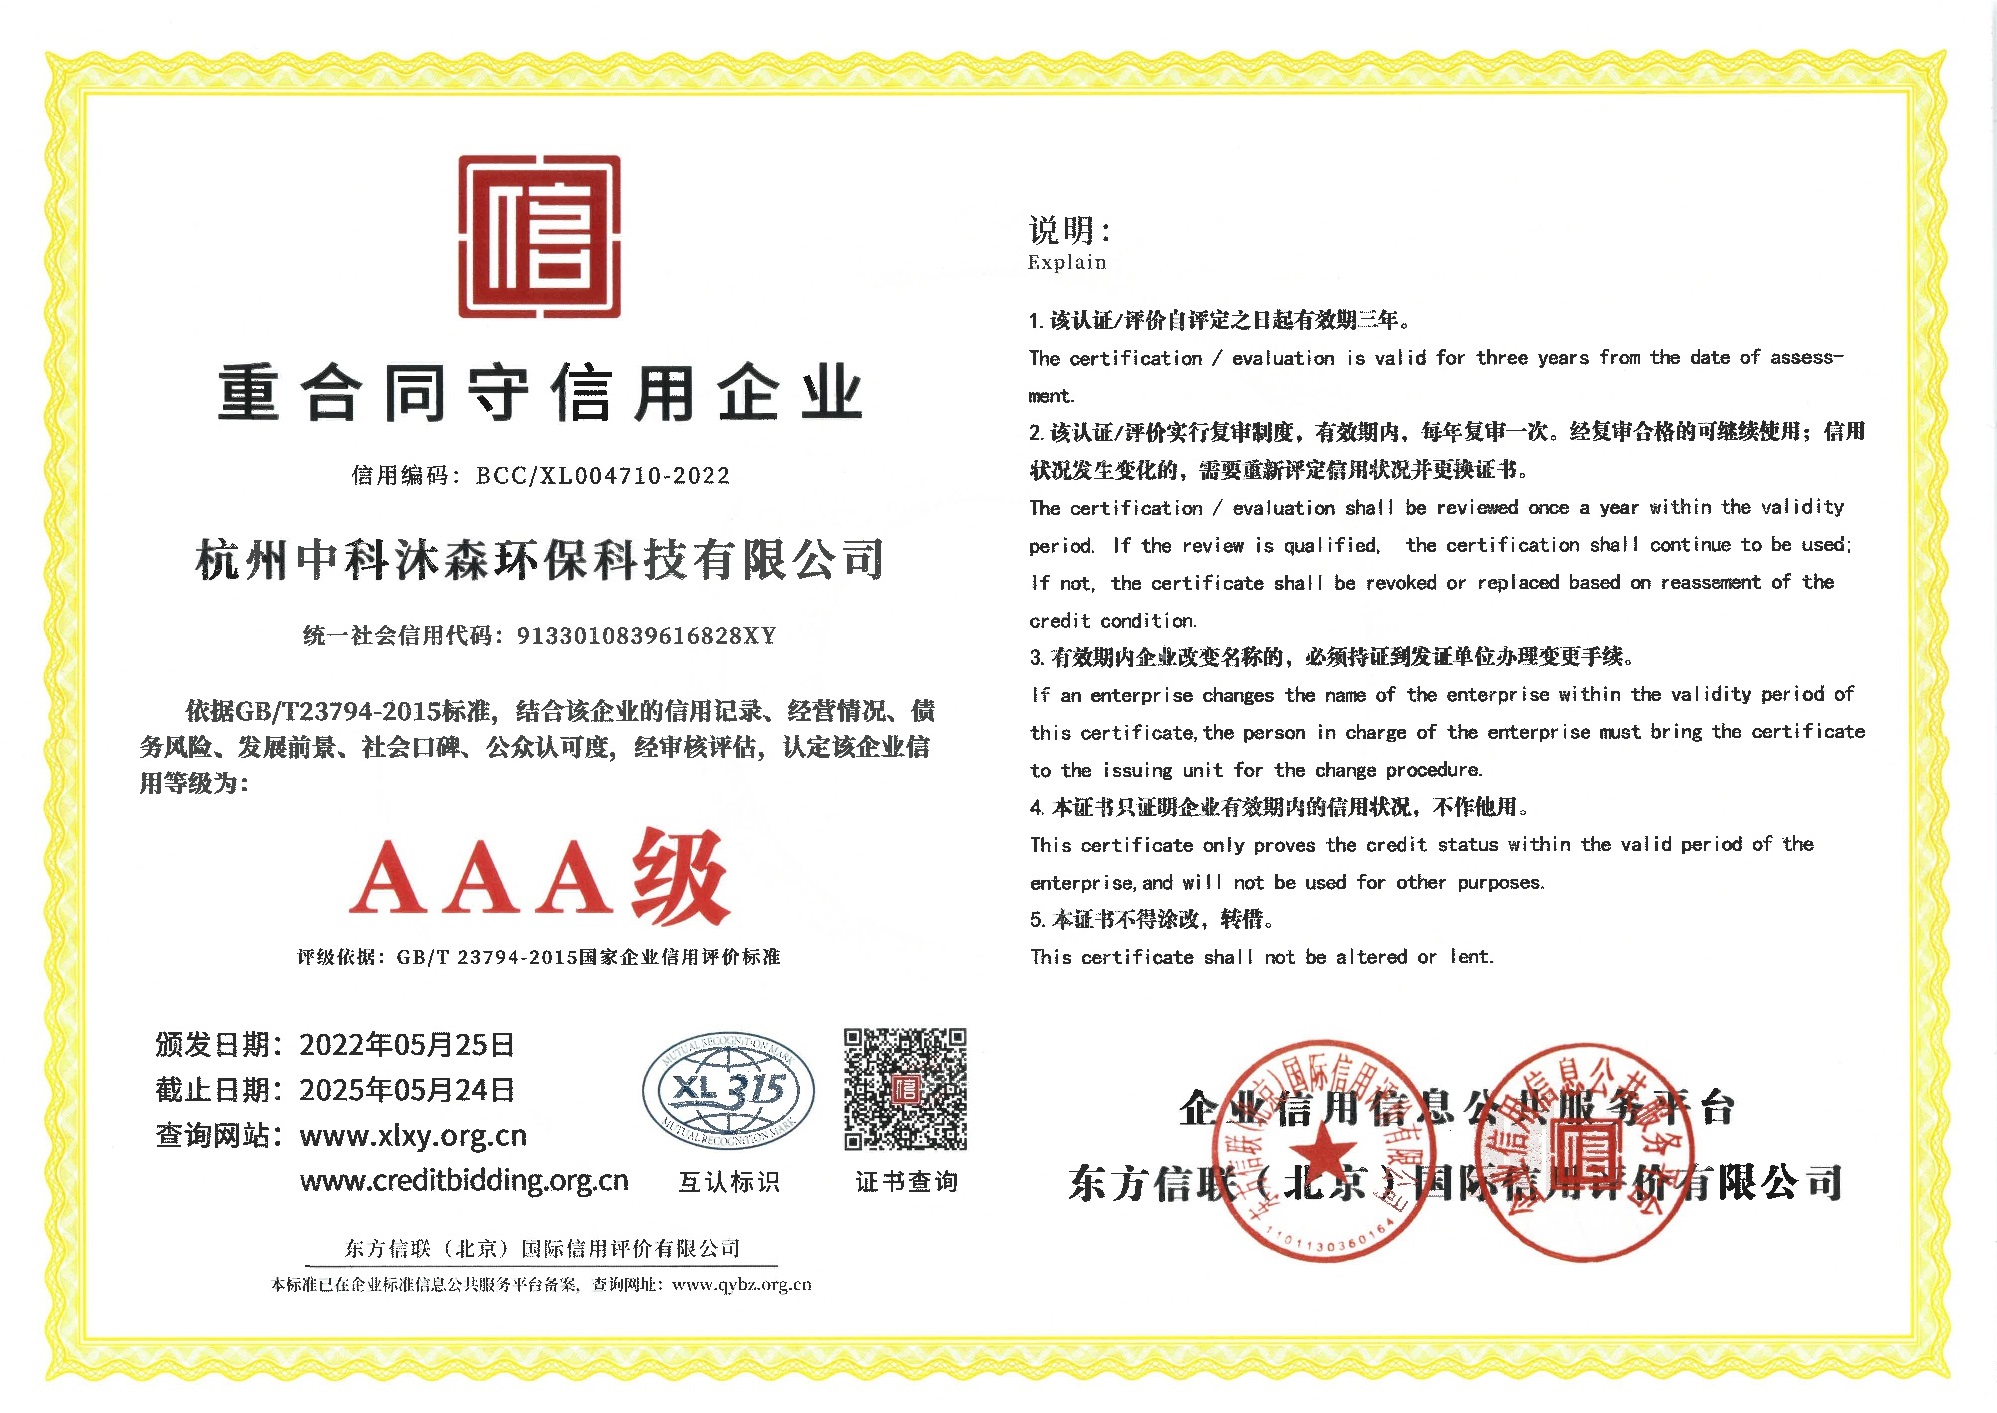 沐森-AAA级信用等级认证证书